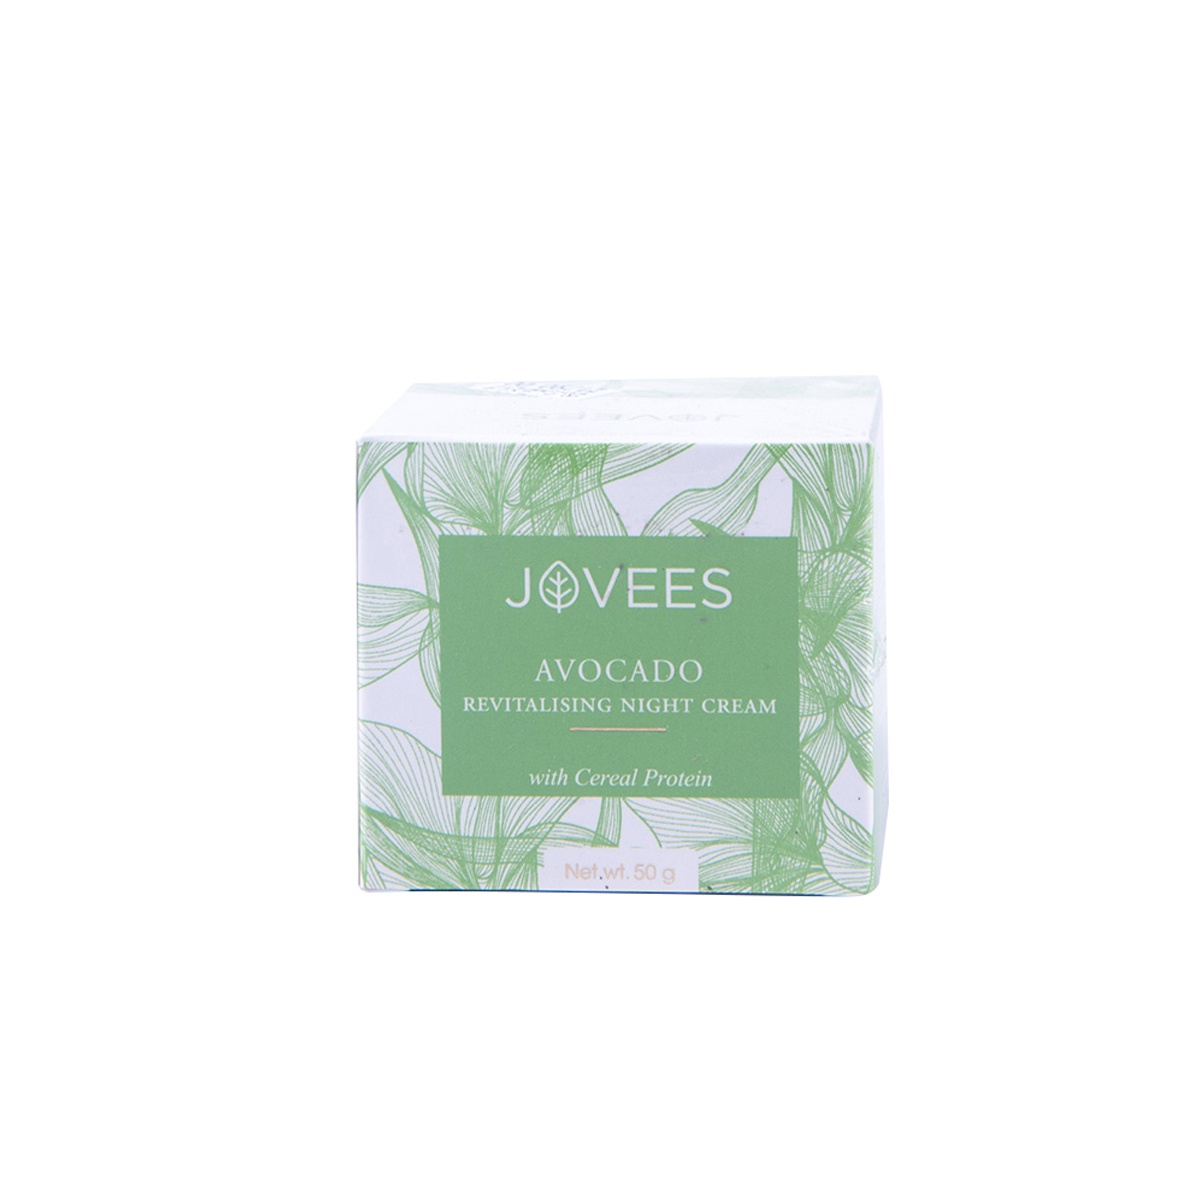 Jovees Night Cream Revitalising Avocado 50G - JOVEES - Facial Care - in Sri Lanka